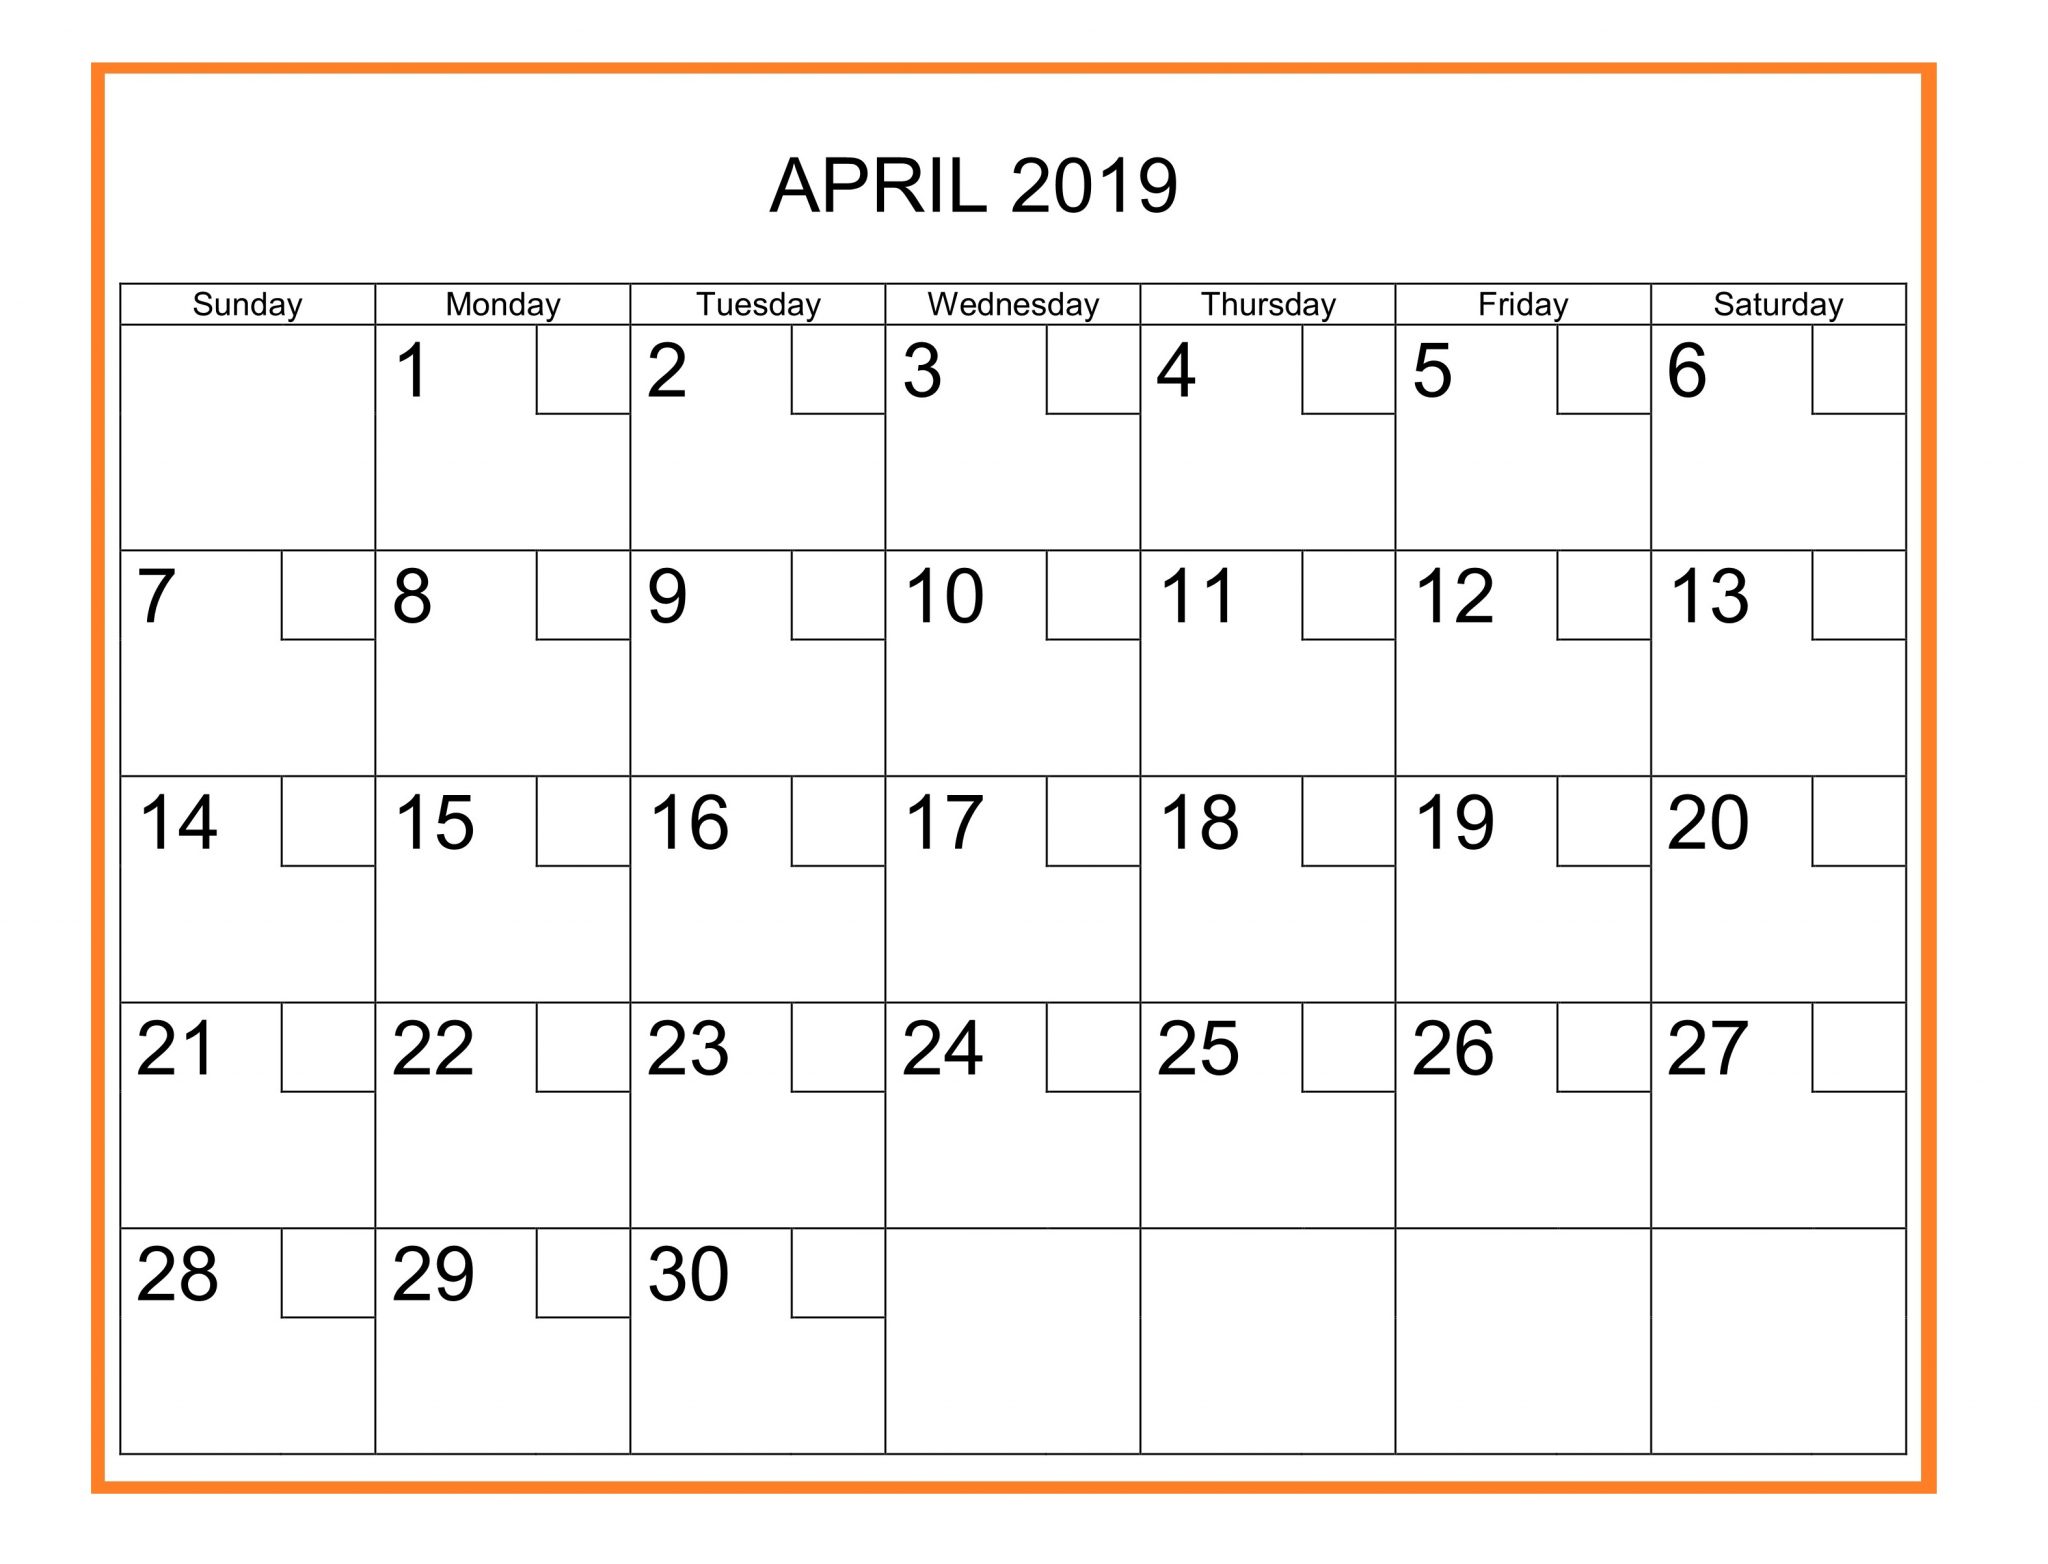 April 2019 Calendar With Holidays